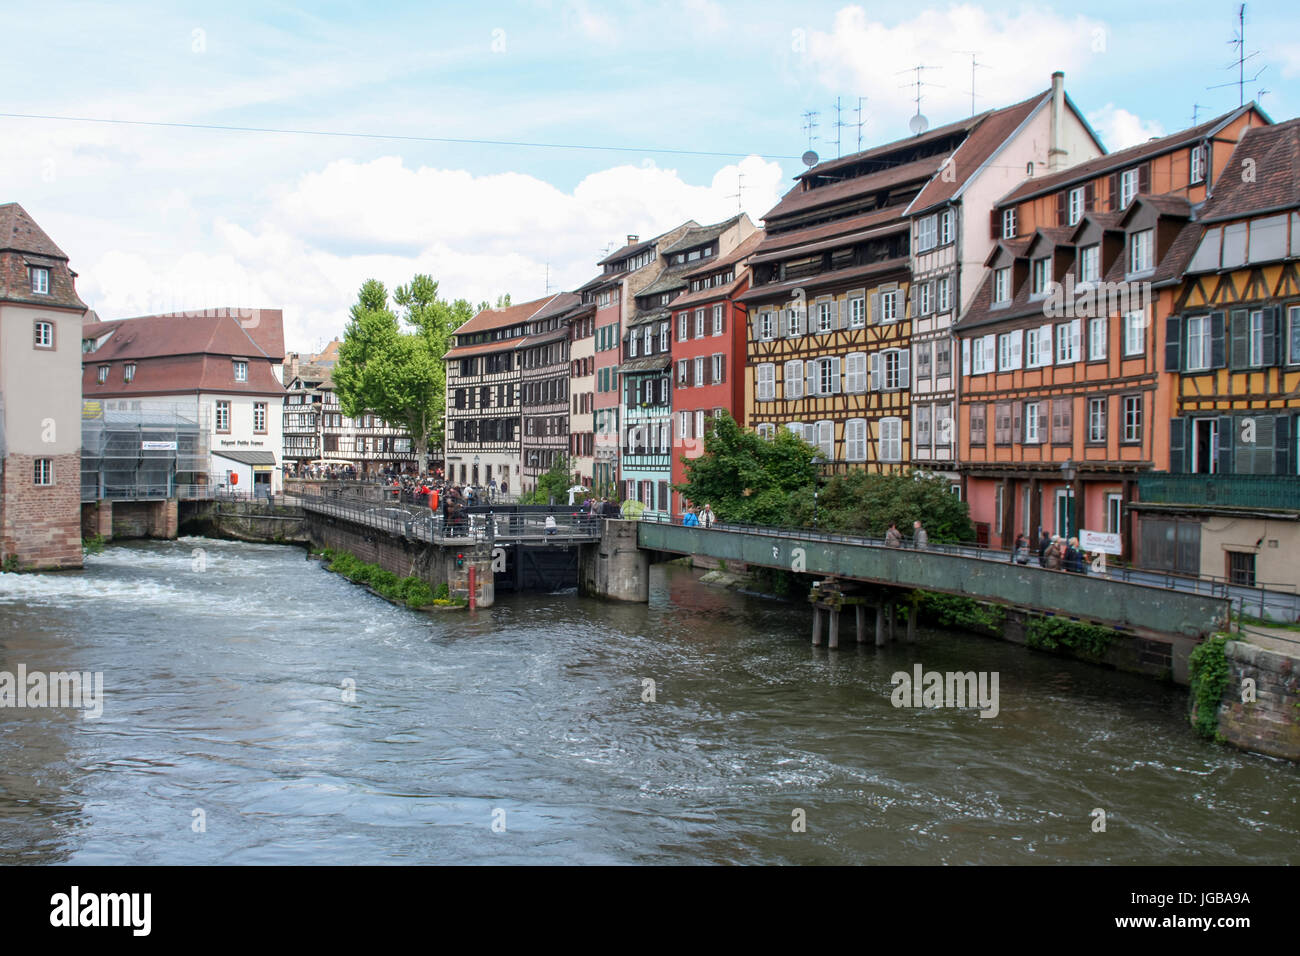 Quartier de la Petite France, Strasbourg, France - Petite France neighbourhood, Strasburg, France Stock Photo